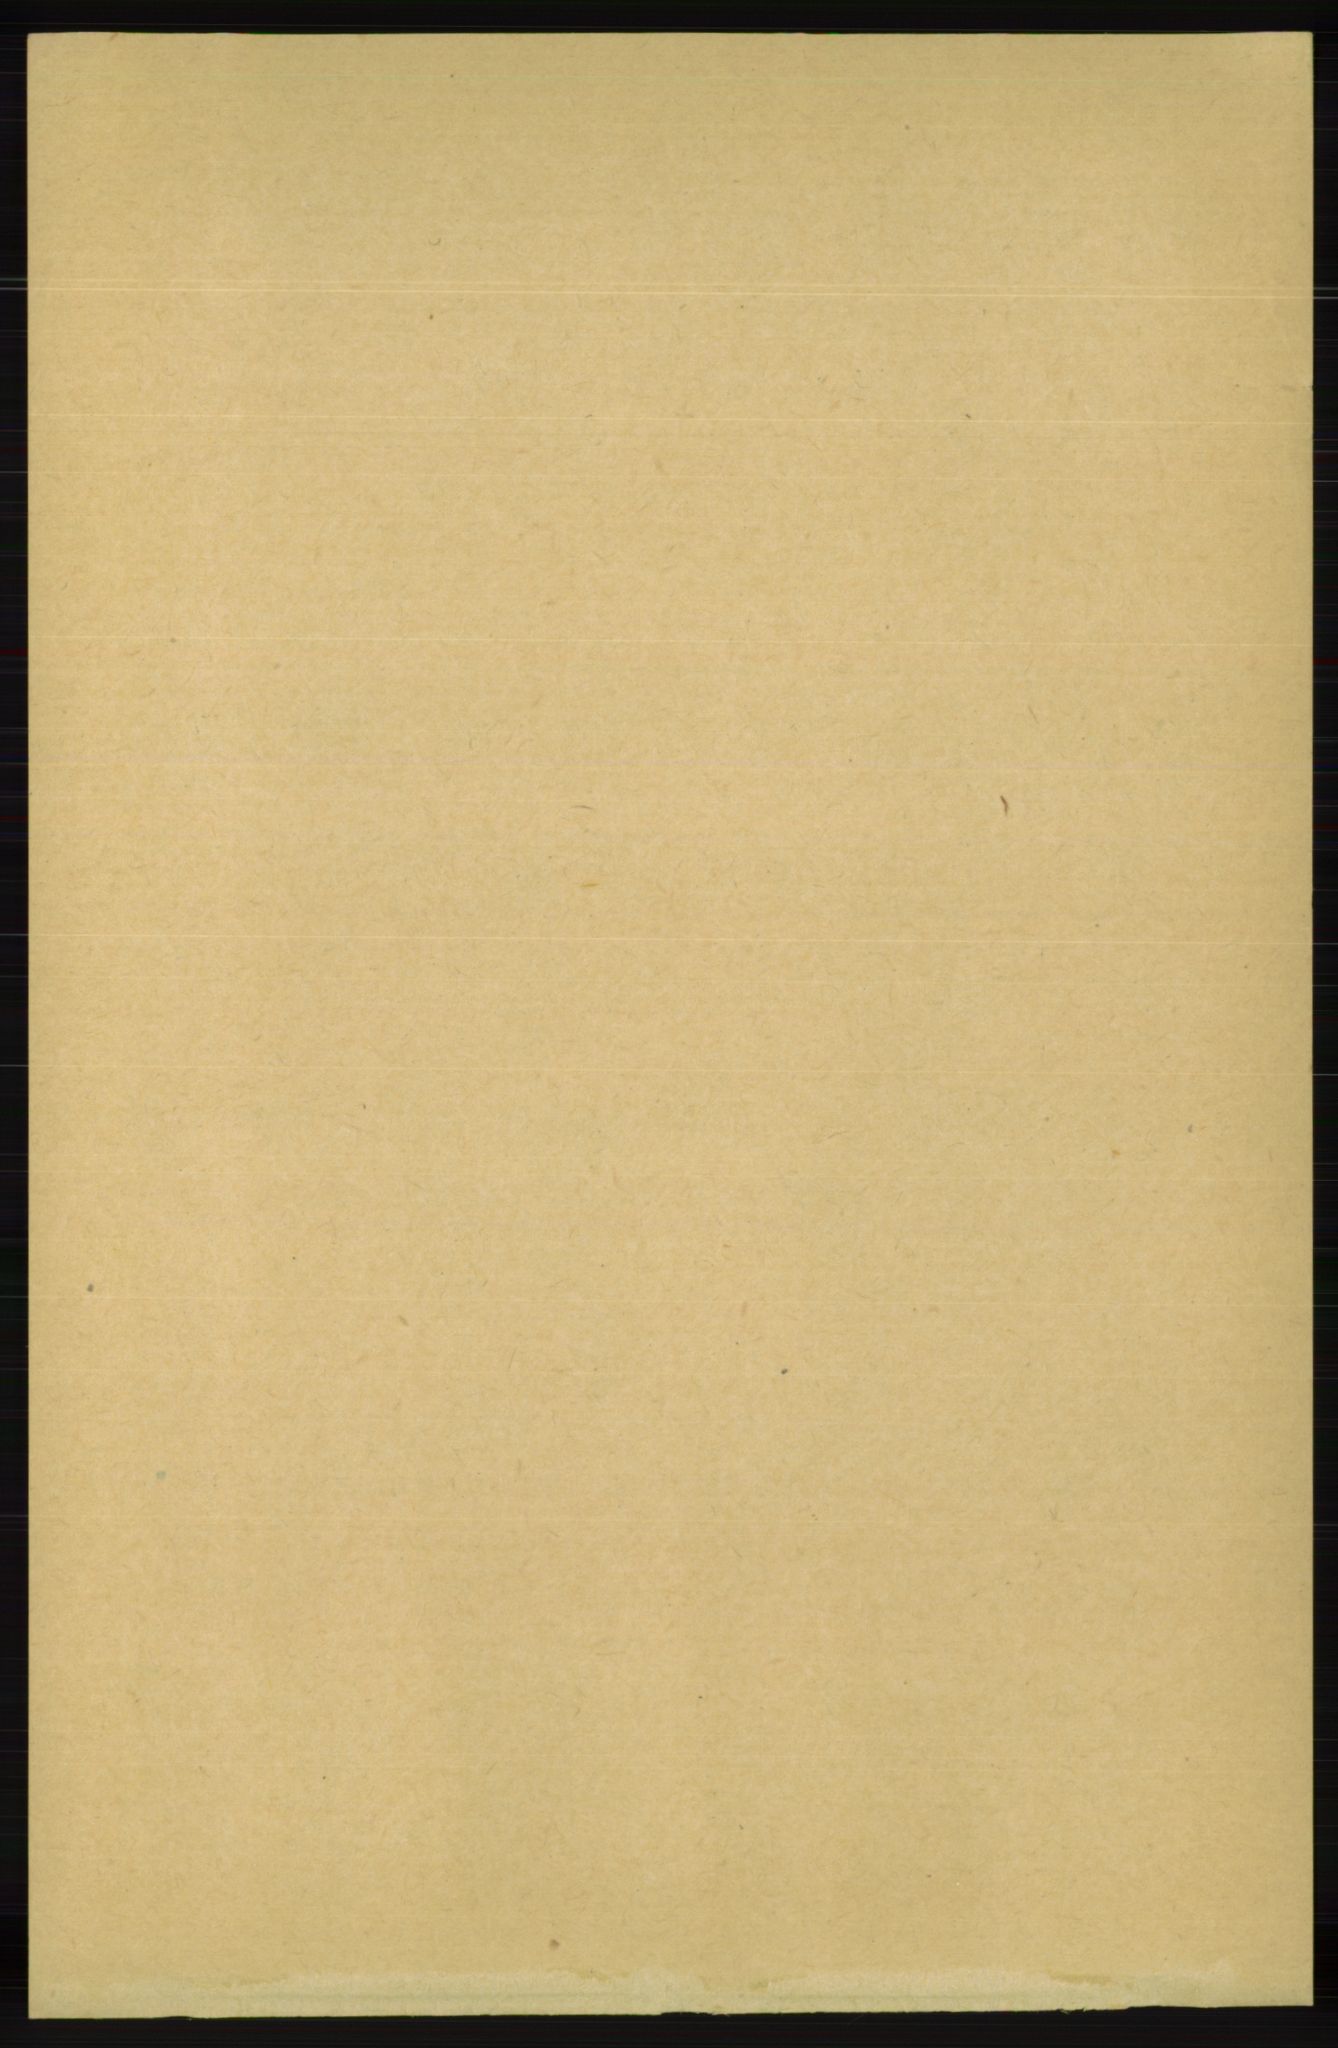 RA, Folketelling 1891 for 1039 Herad herred, 1891, s. 522